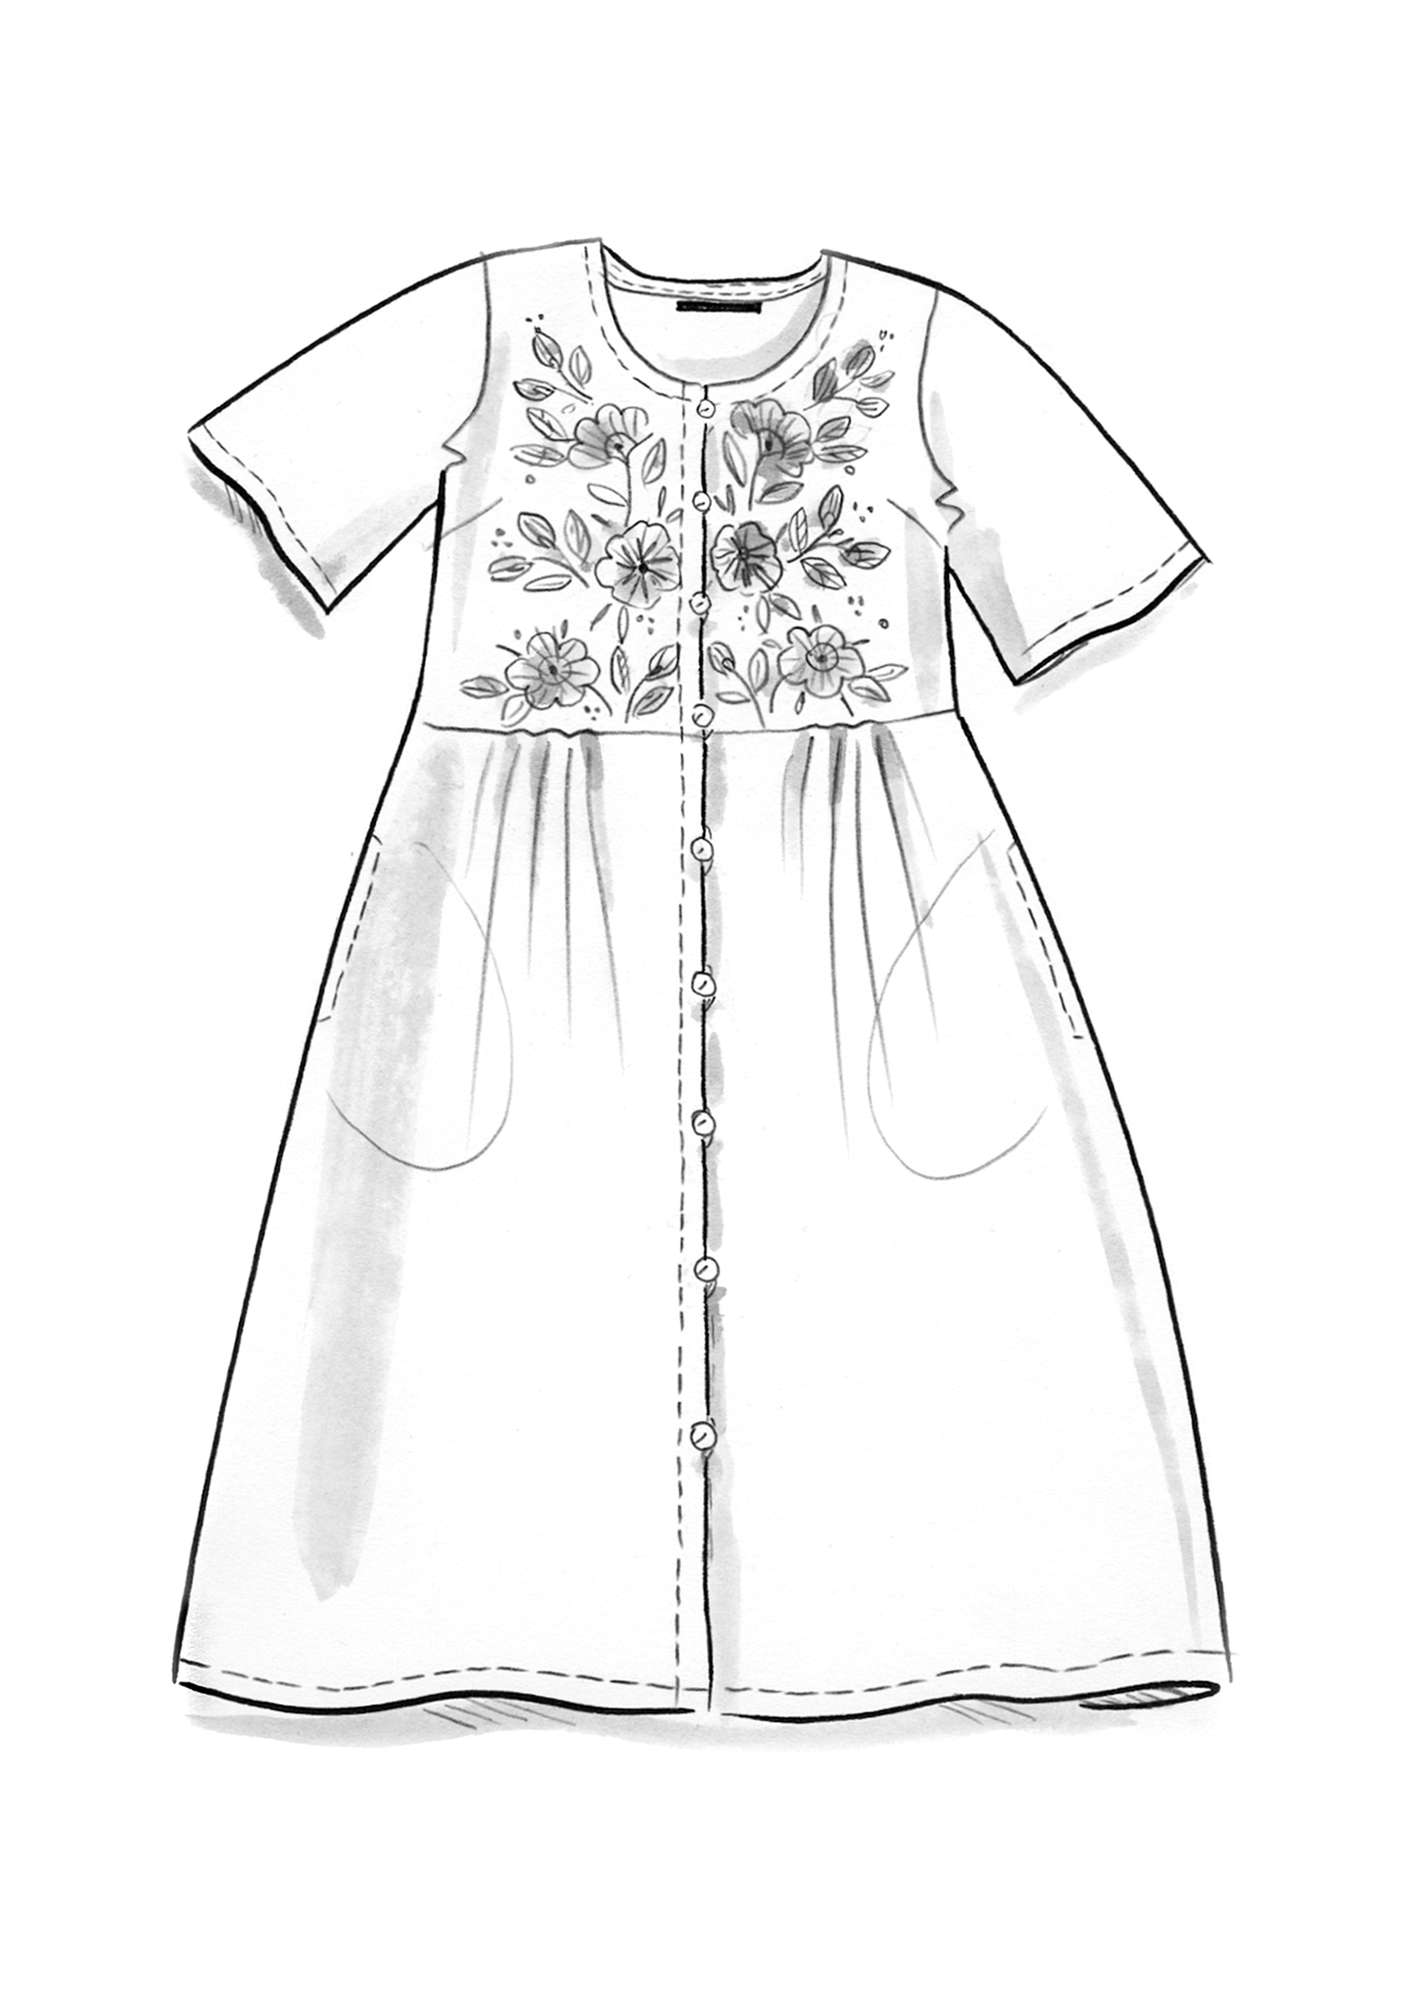 Vævet kjole  Margrethe  i økologisk bomuld/silke sort